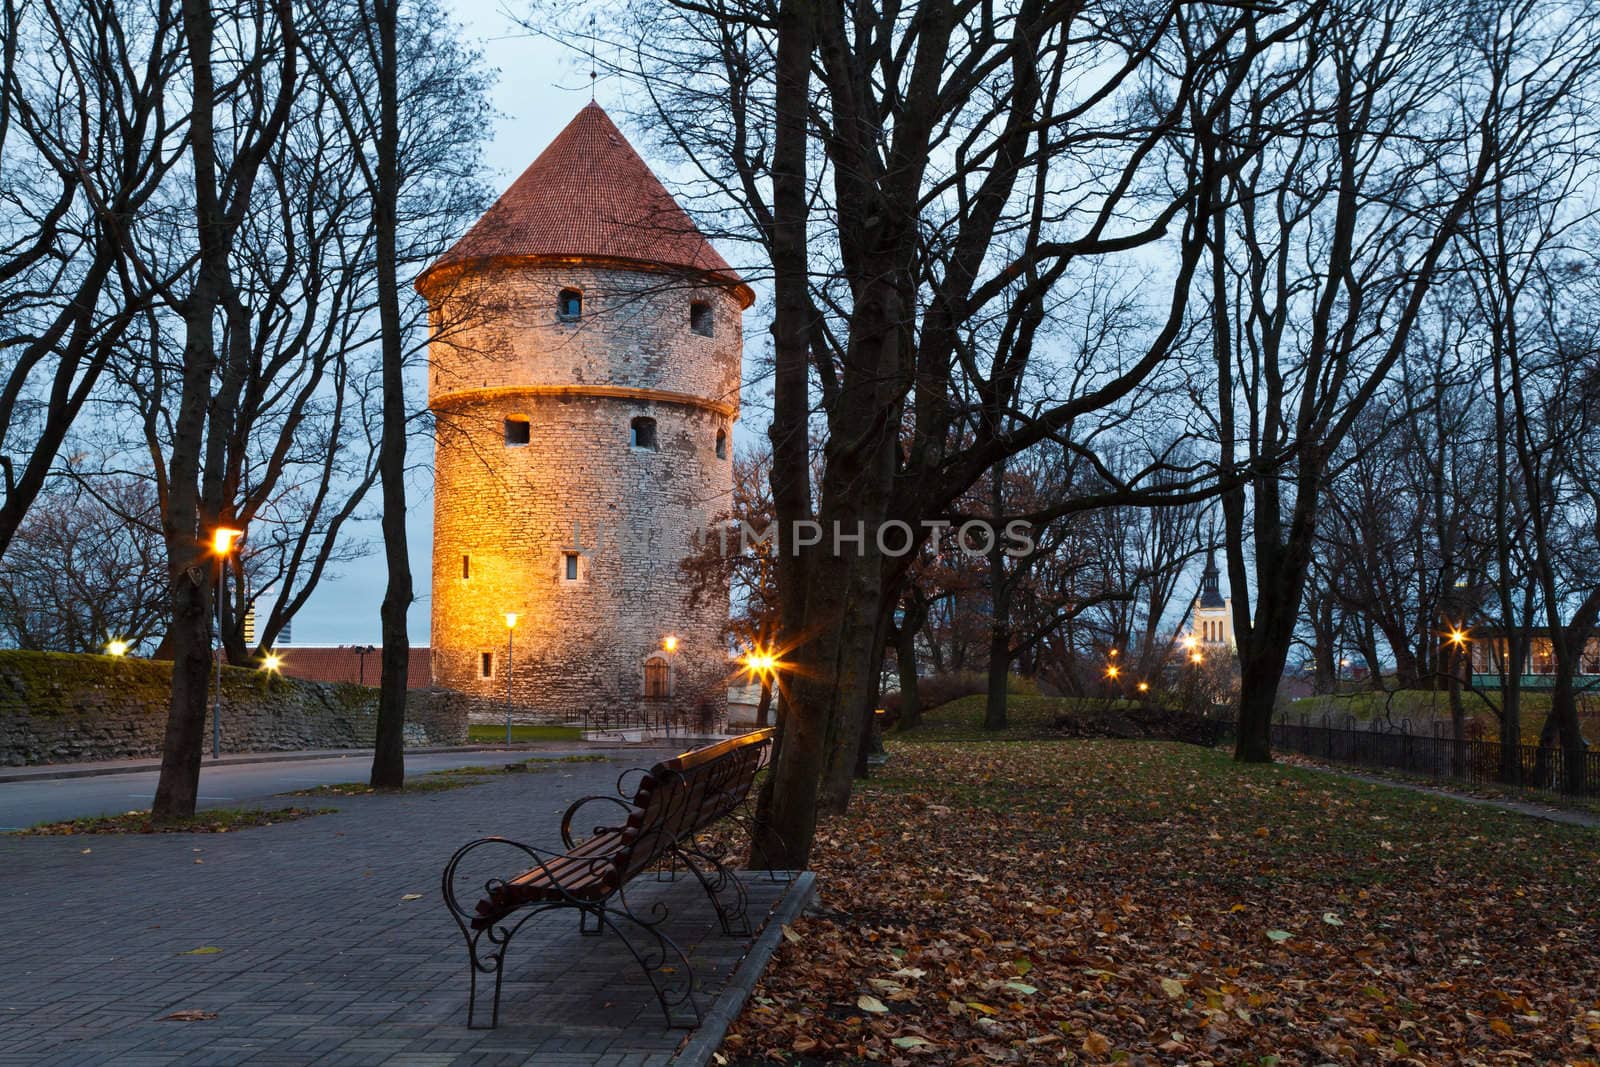 Illuminated Tower in the Old Town of Tallinn , Estonia